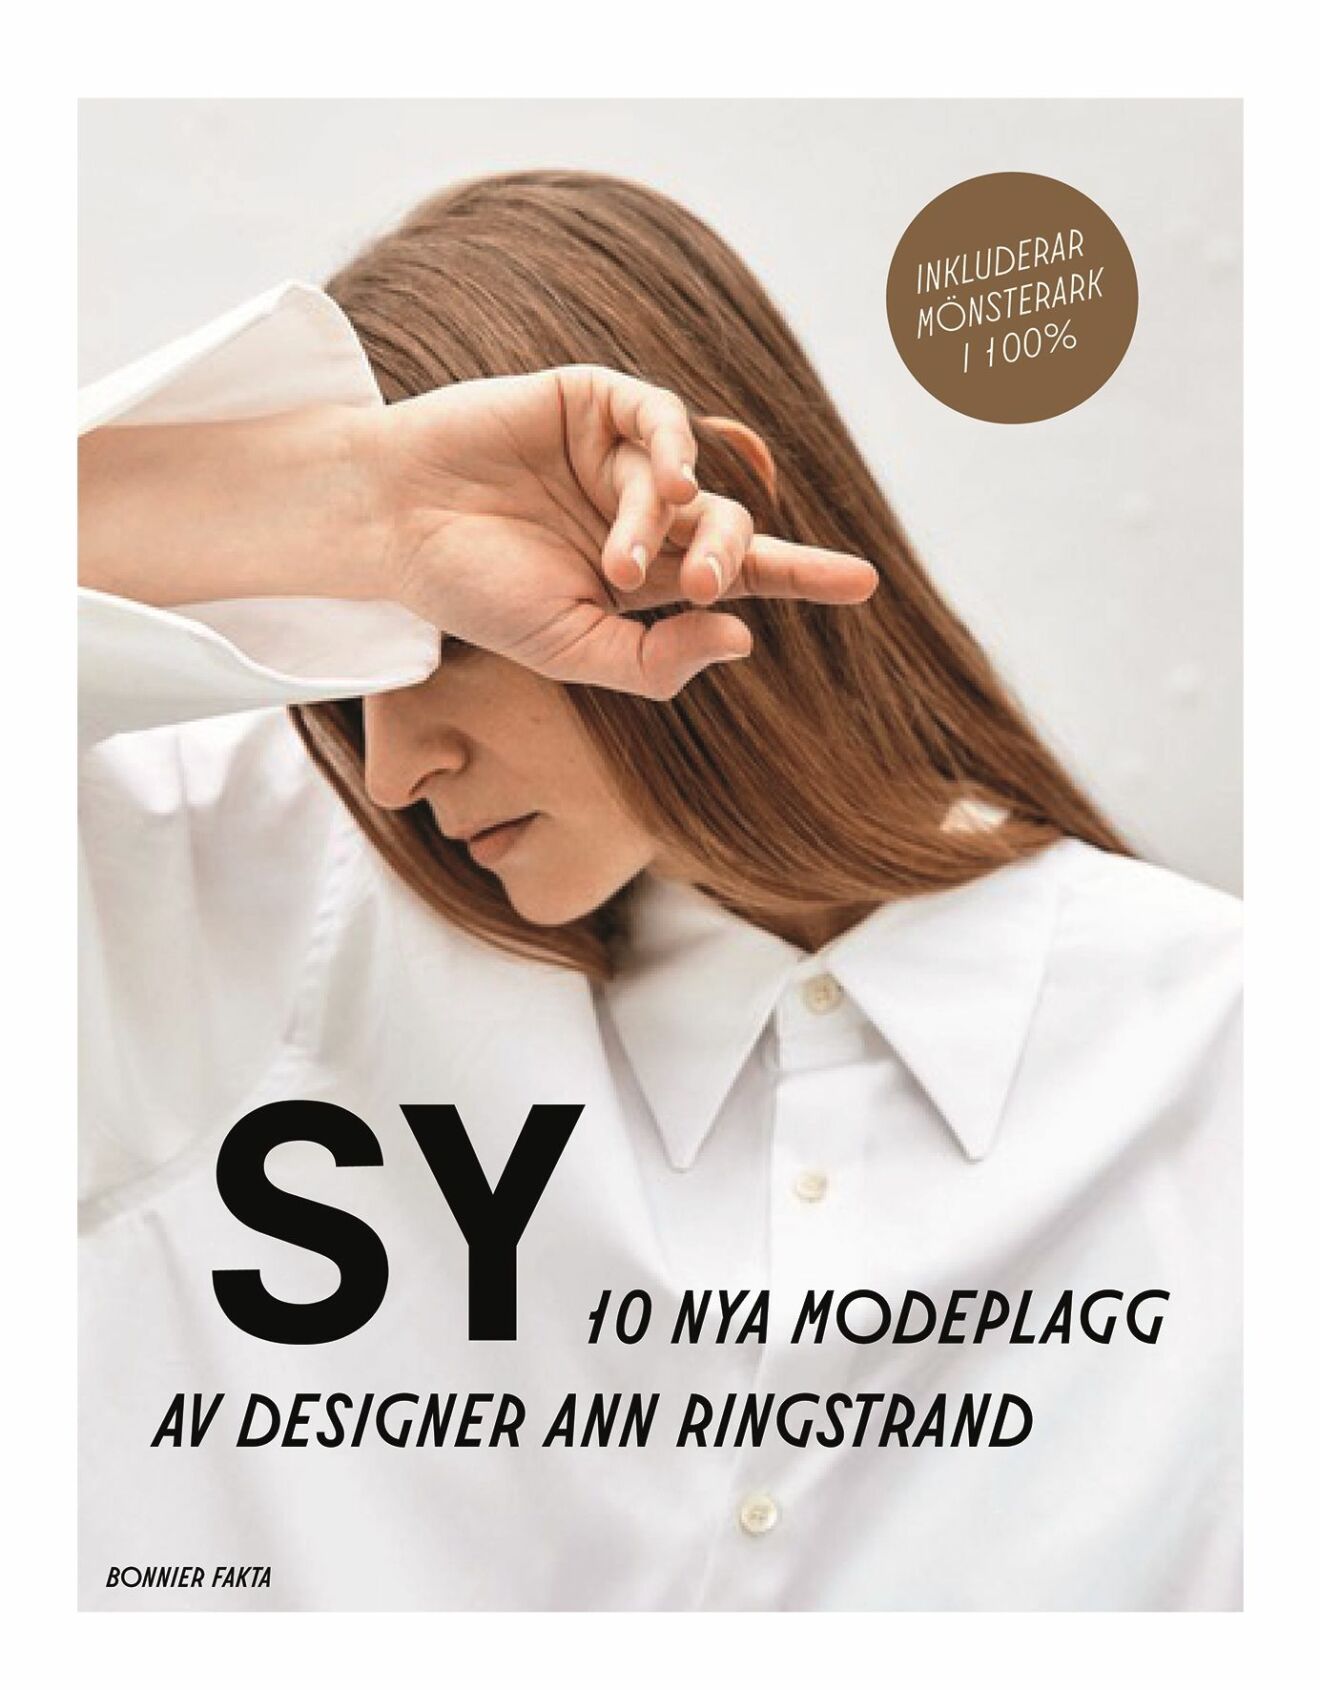 Ann Ringstrands bok SY